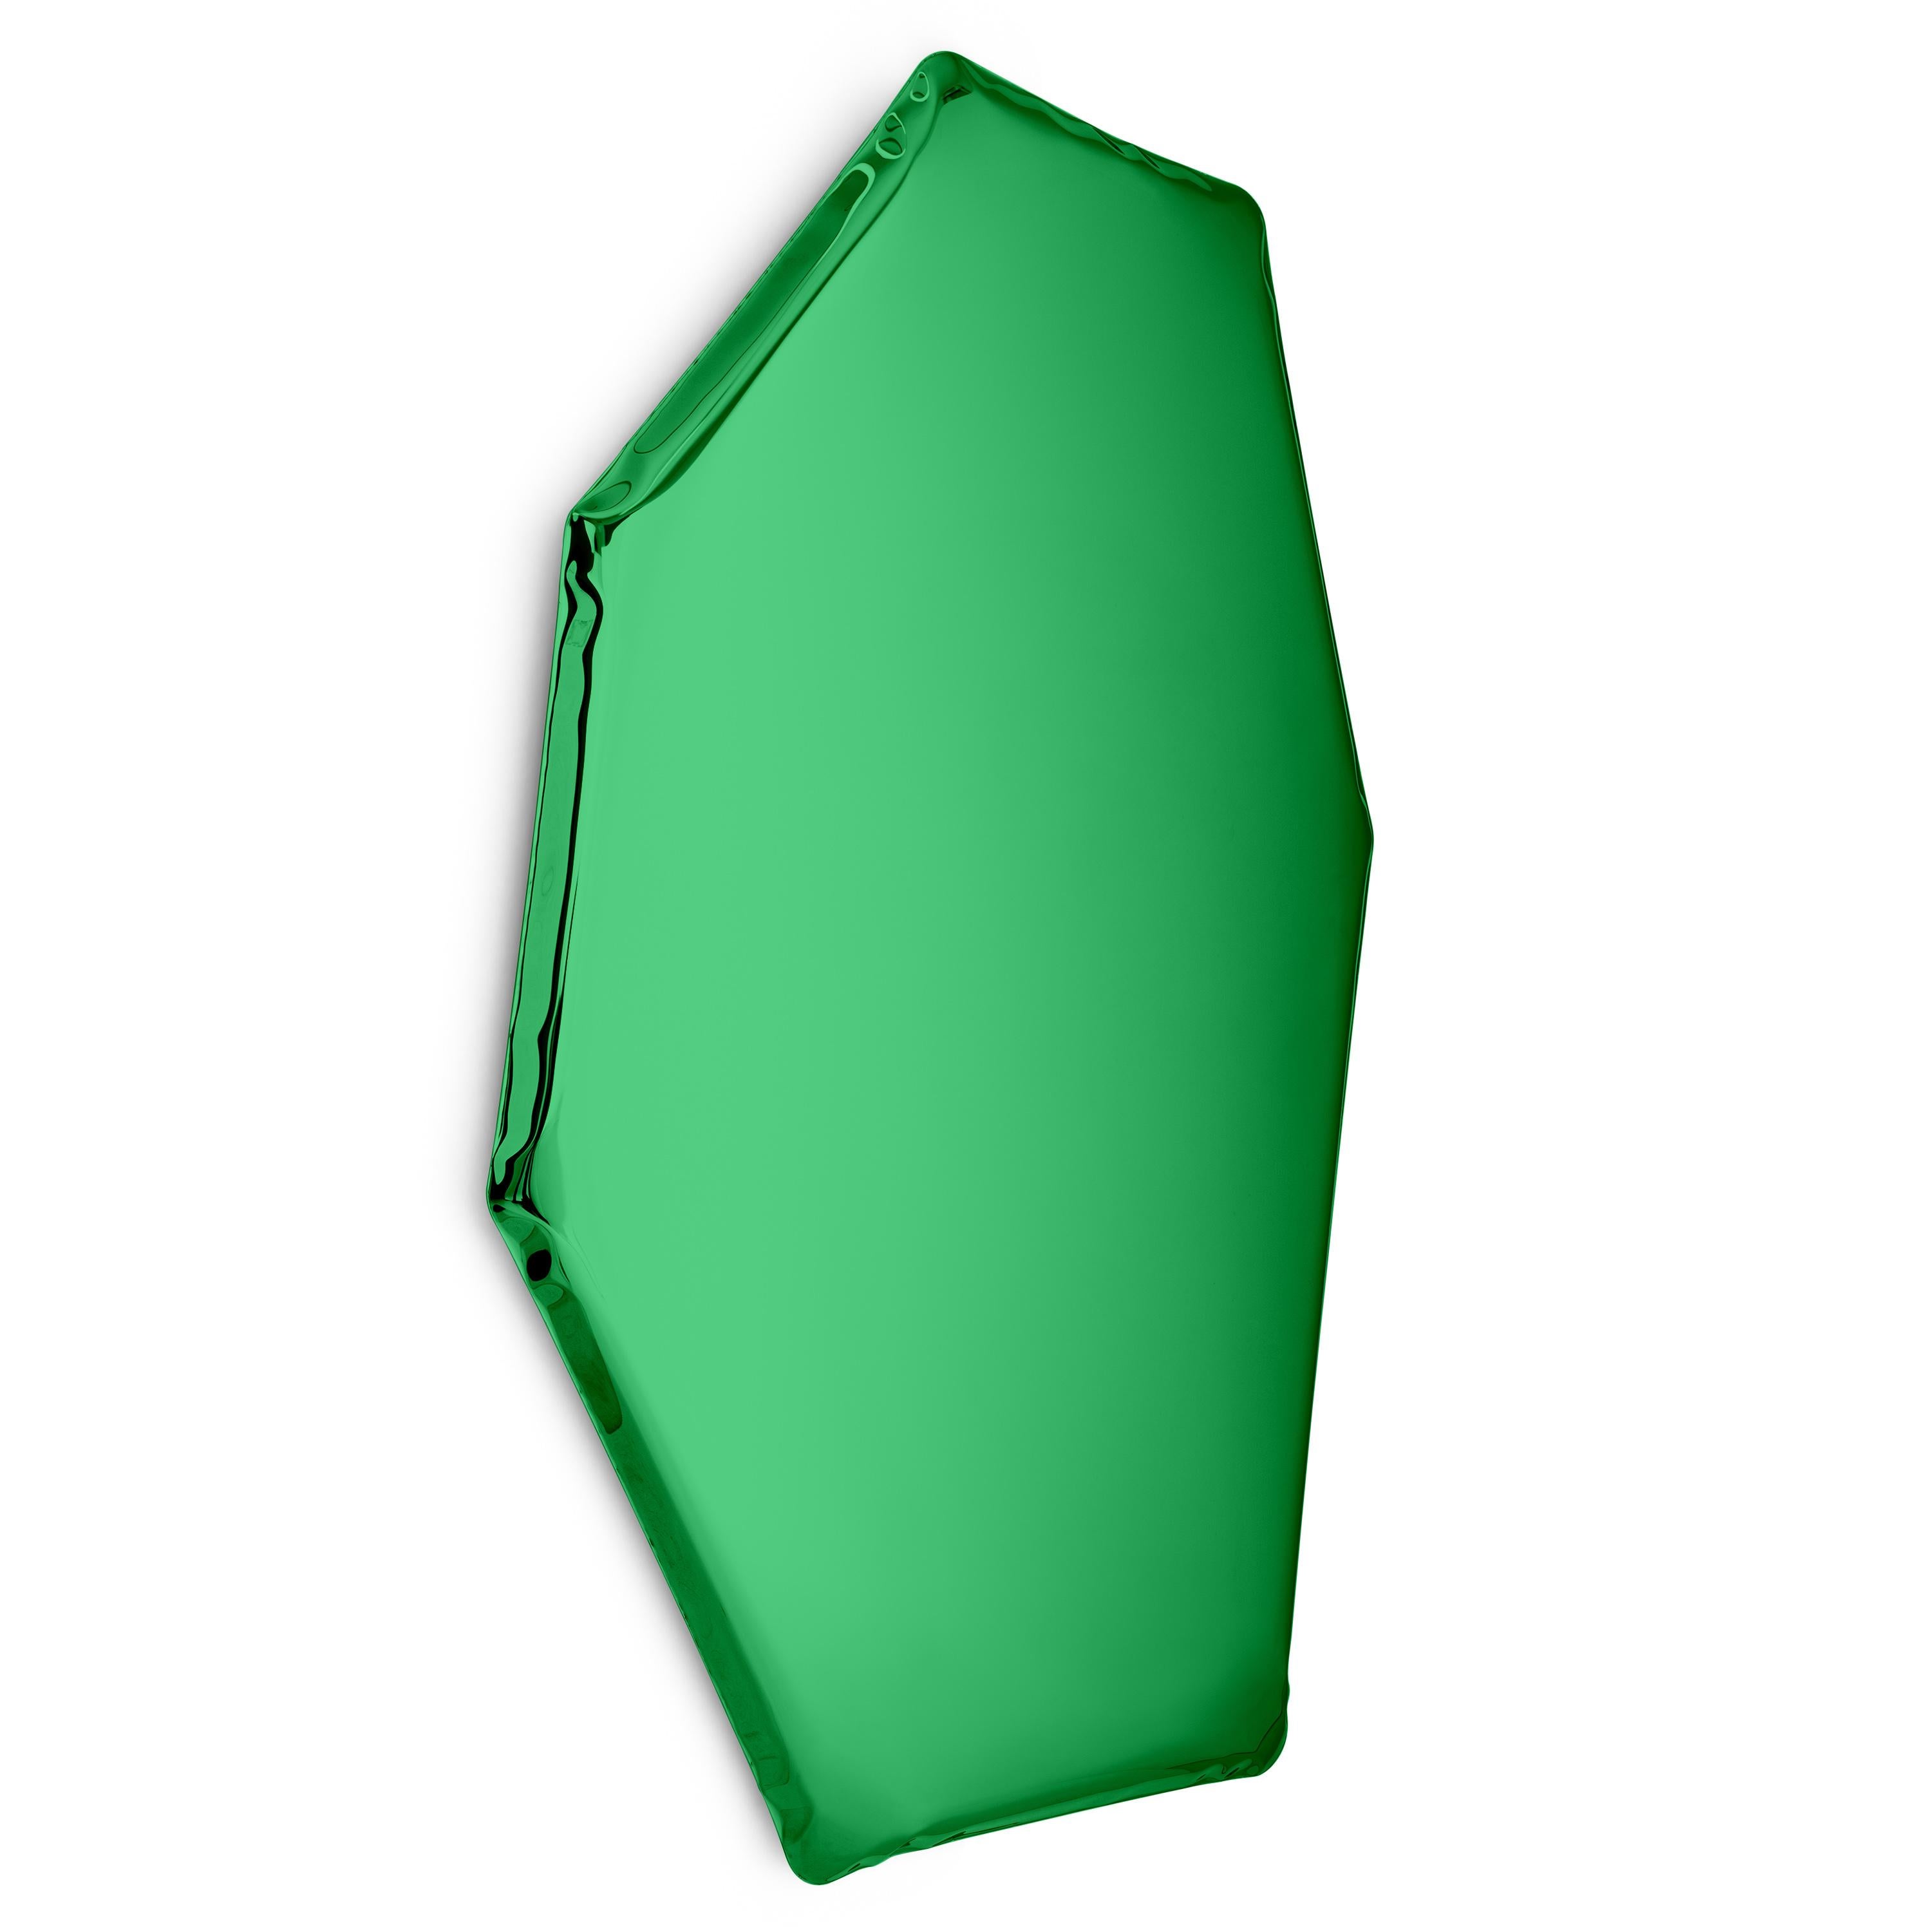 Miroir mural sculptural Emerald C2 de Zieta
Dimensions : D 6 x L 94 x H 149 cm 
Matériau : Acier inoxydable. 
Finition : Emeraude.
Disponible dans les finitions suivantes : acier inoxydable, bleu espace profond, émeraude, saphir, saphir/émeraude,